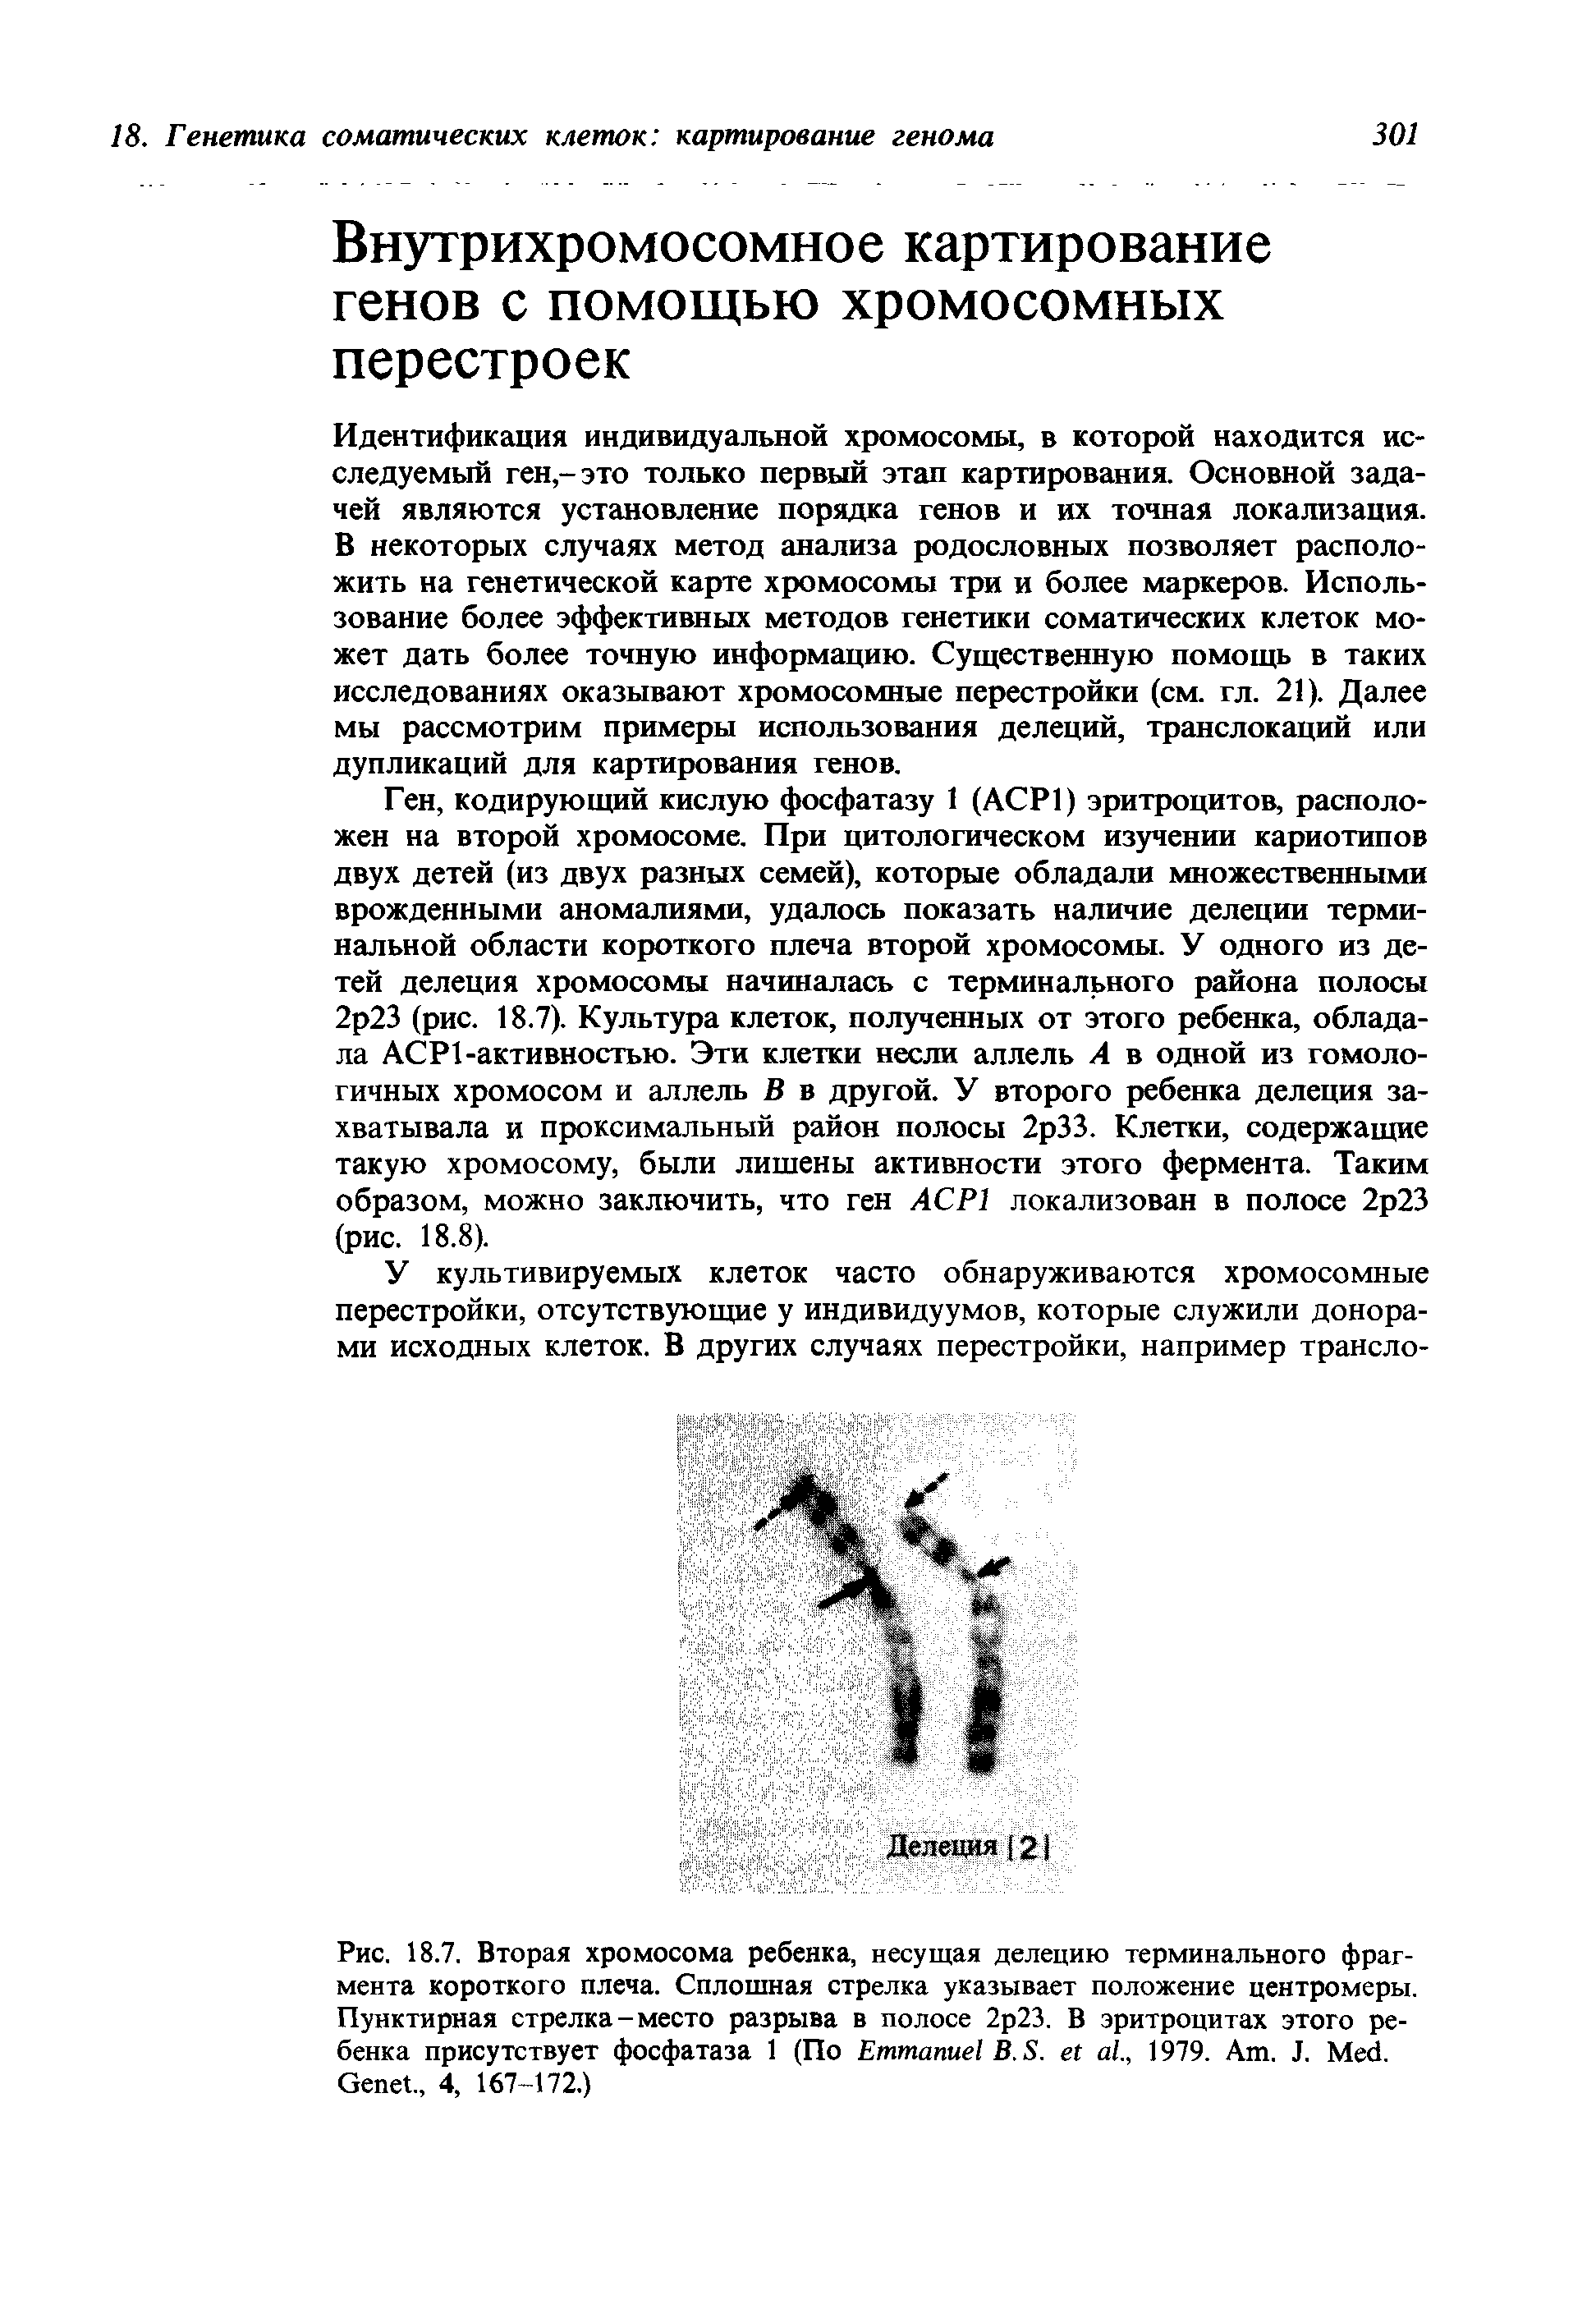 Рис. 18.7. Вторая хромосома ребенка, несущая делению терминального фрагмента короткого плеча. Сплошная стрелка указывает положение центромеры. Пунктирная стрелка-место разрыва в полосе 2р23. В эритроцитах этого ребенка присутствует фосфатаза 1 (По E В. S. ., 1979. A . J. M . G ., 4, 167-172.)...